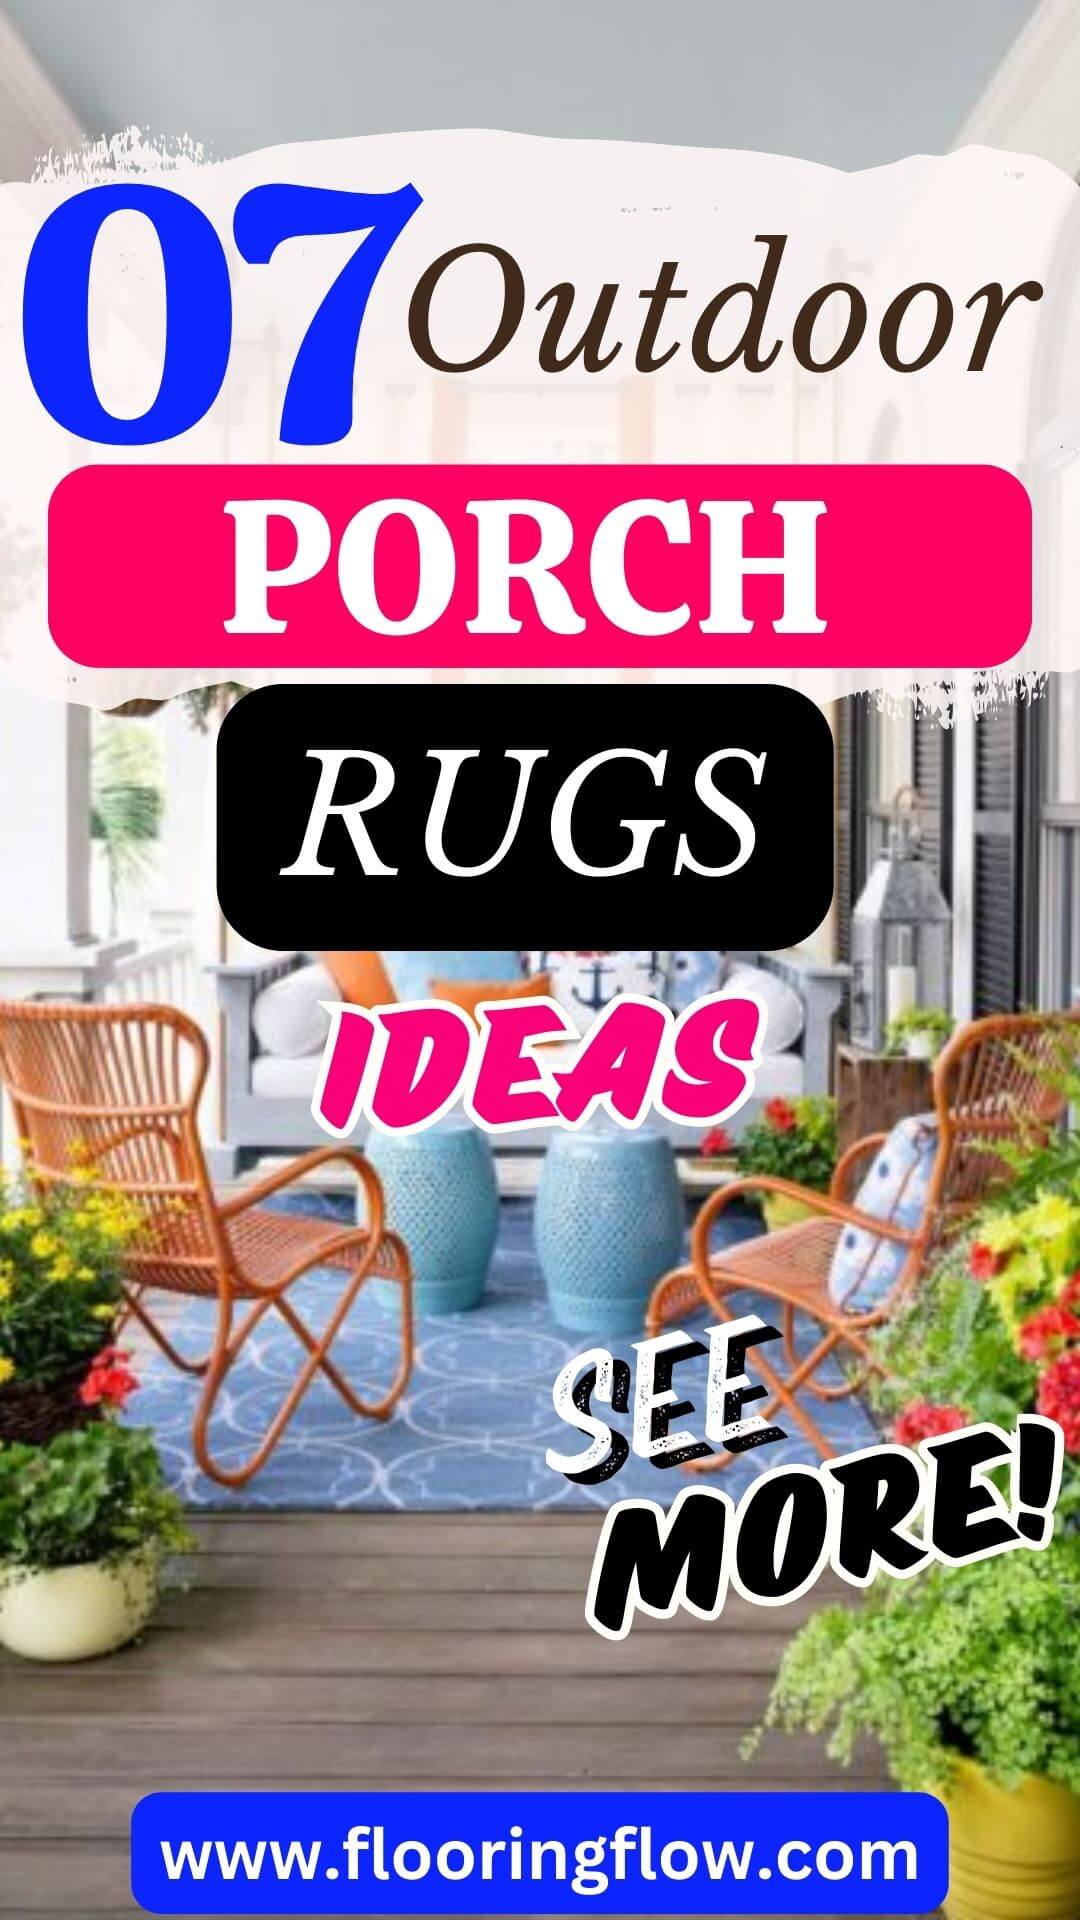 Outdoor Poch Rugs Ideas